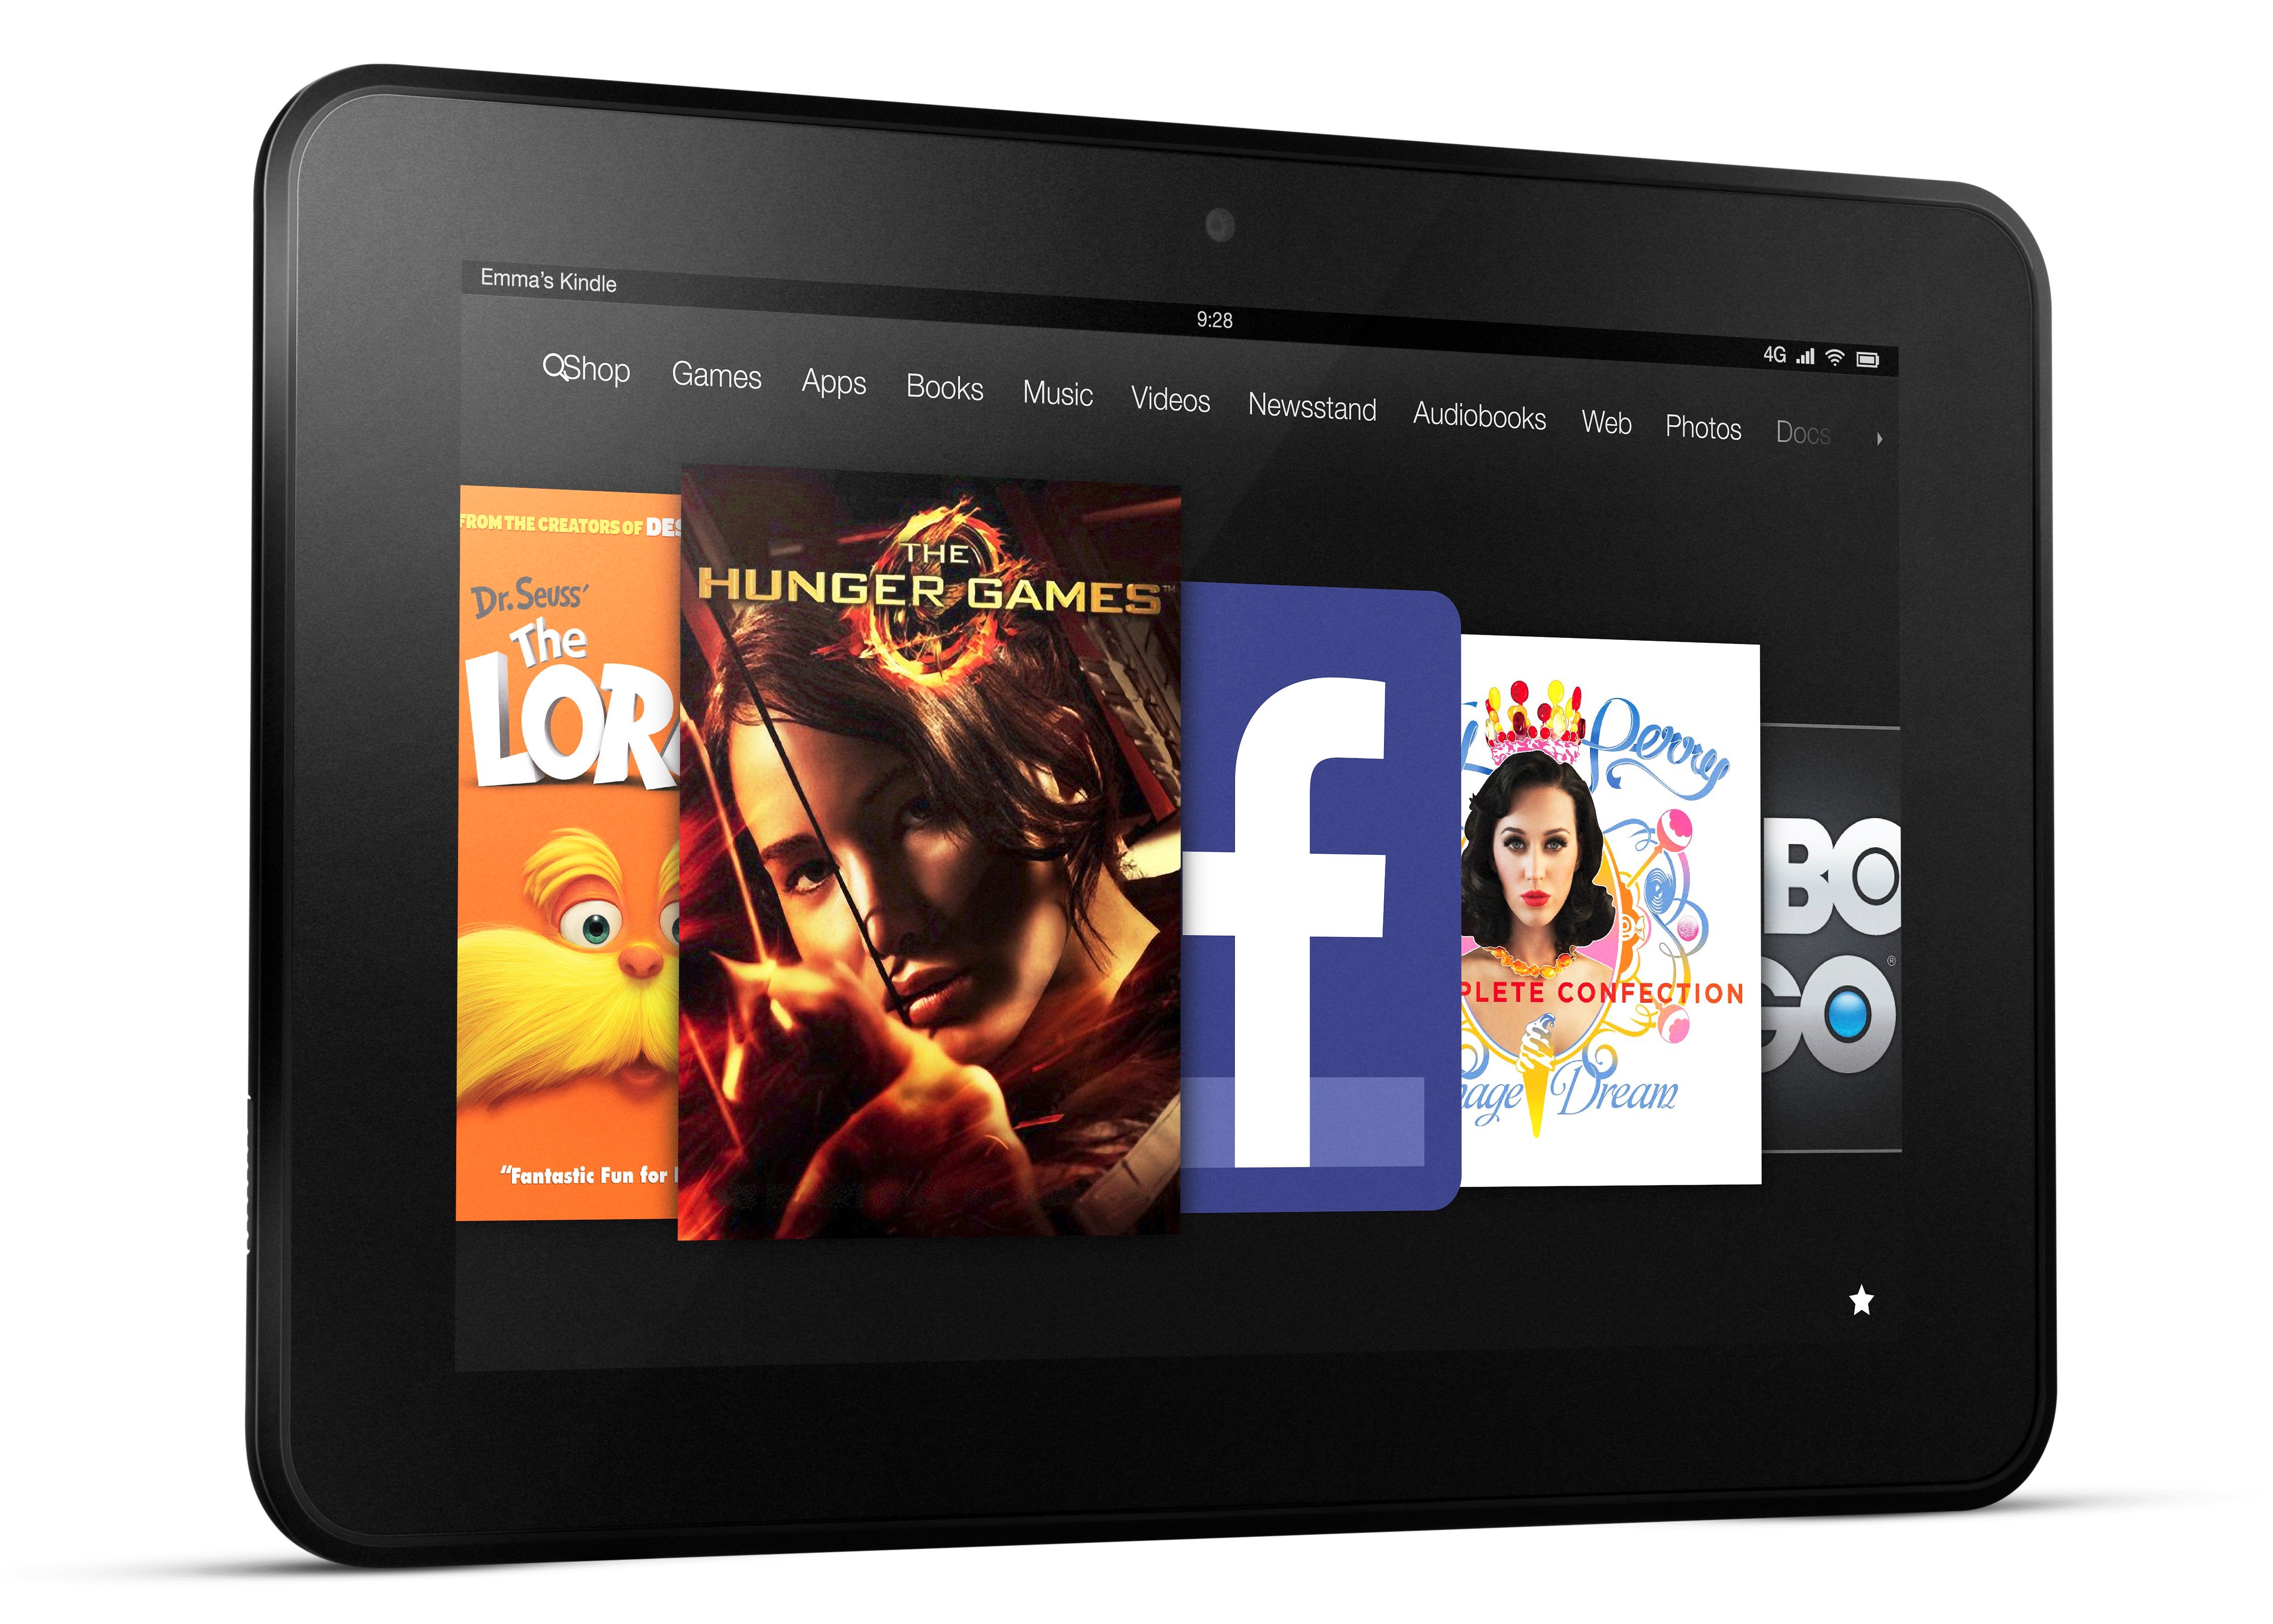 Kindle Fire HD 8.9 Deals 2012